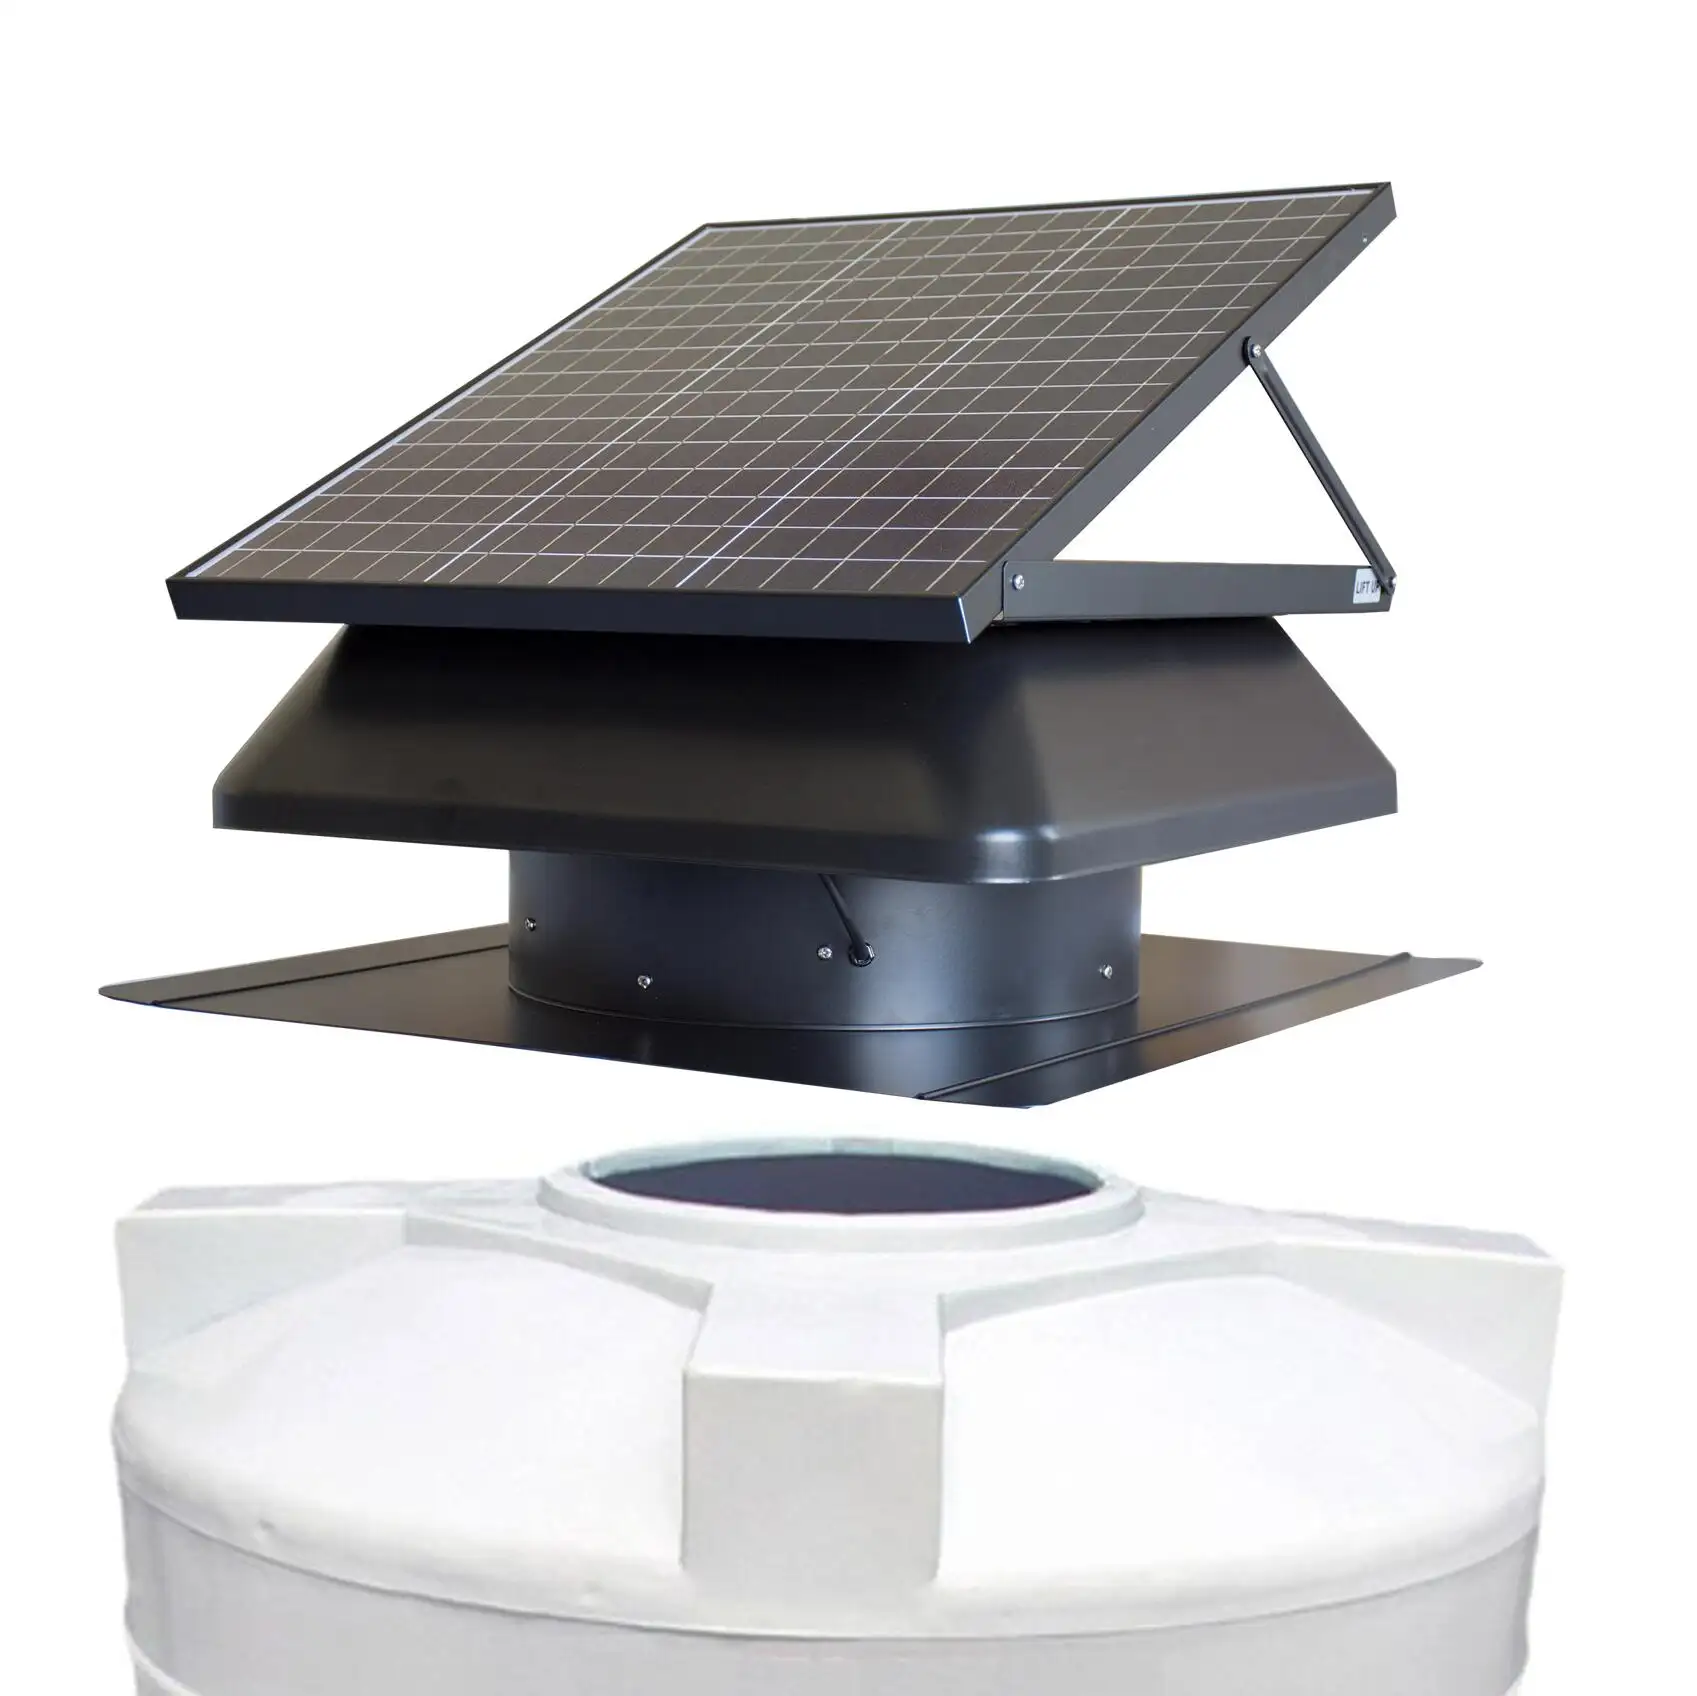 50W 14 Zoll Solarenergie Entlüftung ventilator Abluft metall ohne Leistung Dach ventilator Gleichstrom Dach belüftung Wassertank Absaug kühler